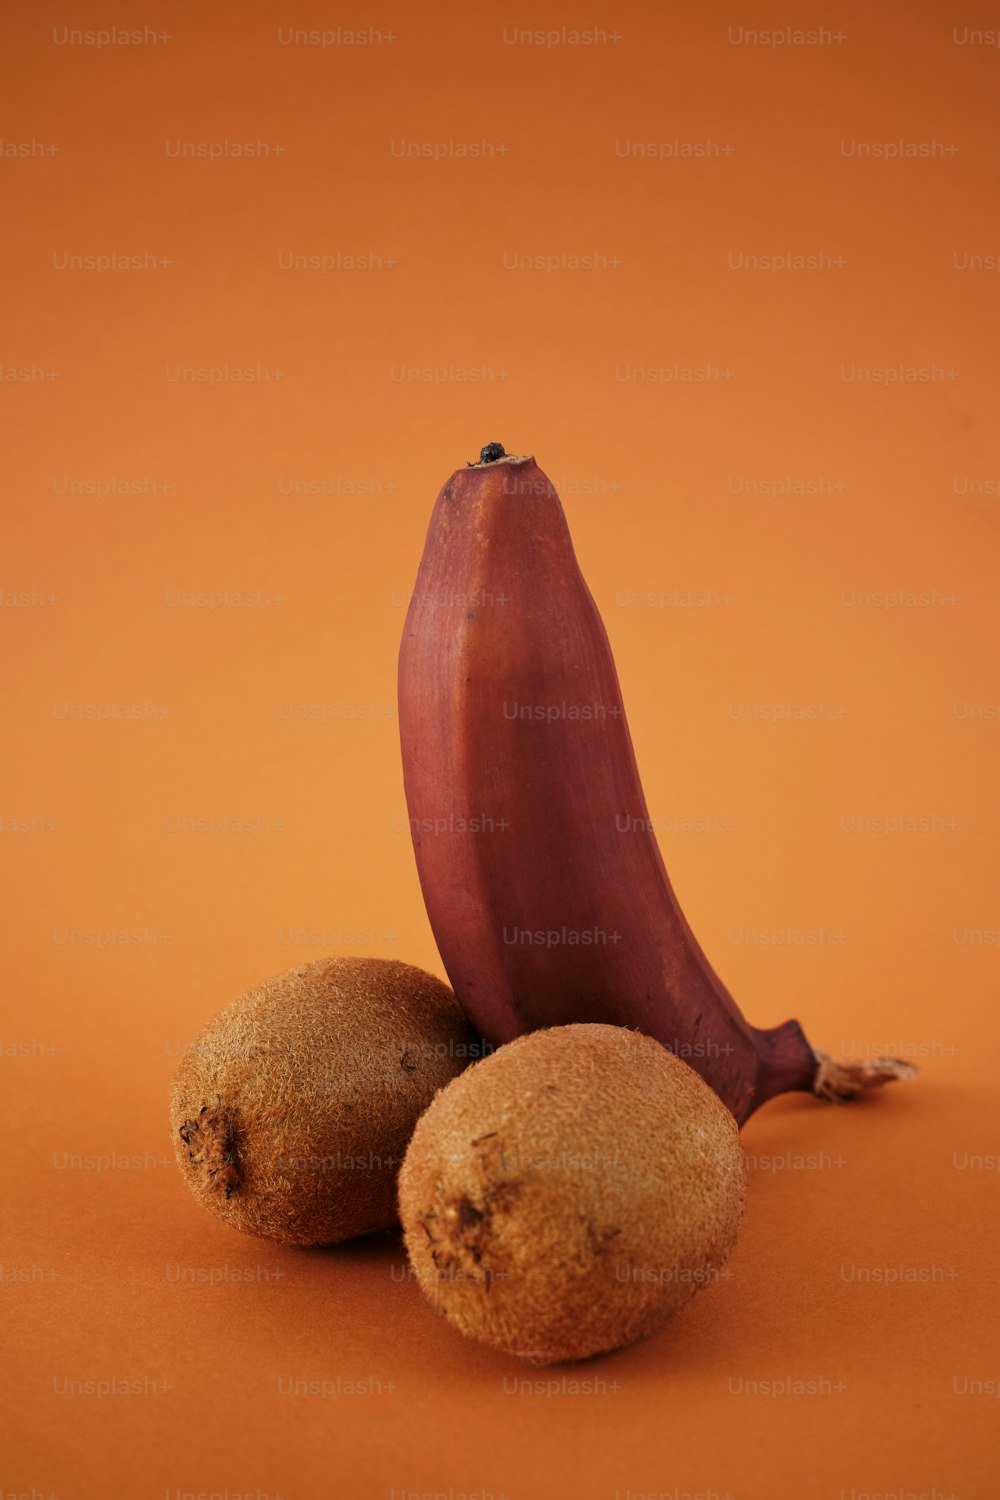 eine Banane und zwei Kiwis auf orangefarbenem Hintergrund